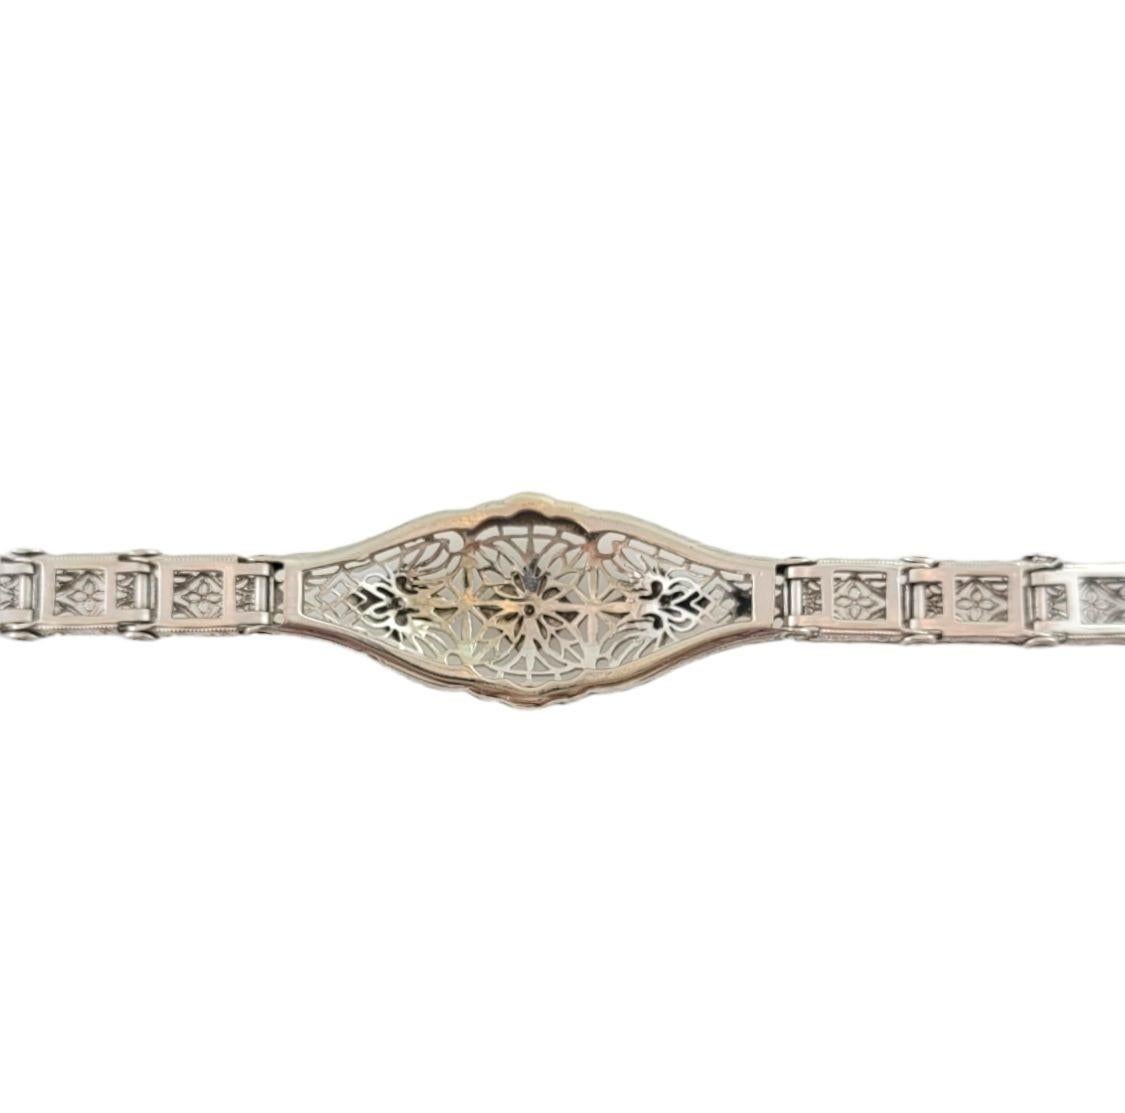 Dieses elegante Armband zeichnet sich durch zwei runde Diamanten im Einzelschliff aus, die in ein filigranes 10-karätiges Weißgold gefasst sind. Breite: 10 mm.

Ungefähres Gesamtgewicht der Diamanten: 04 ct.

Farbe des Diamanten: I

Reinheit des